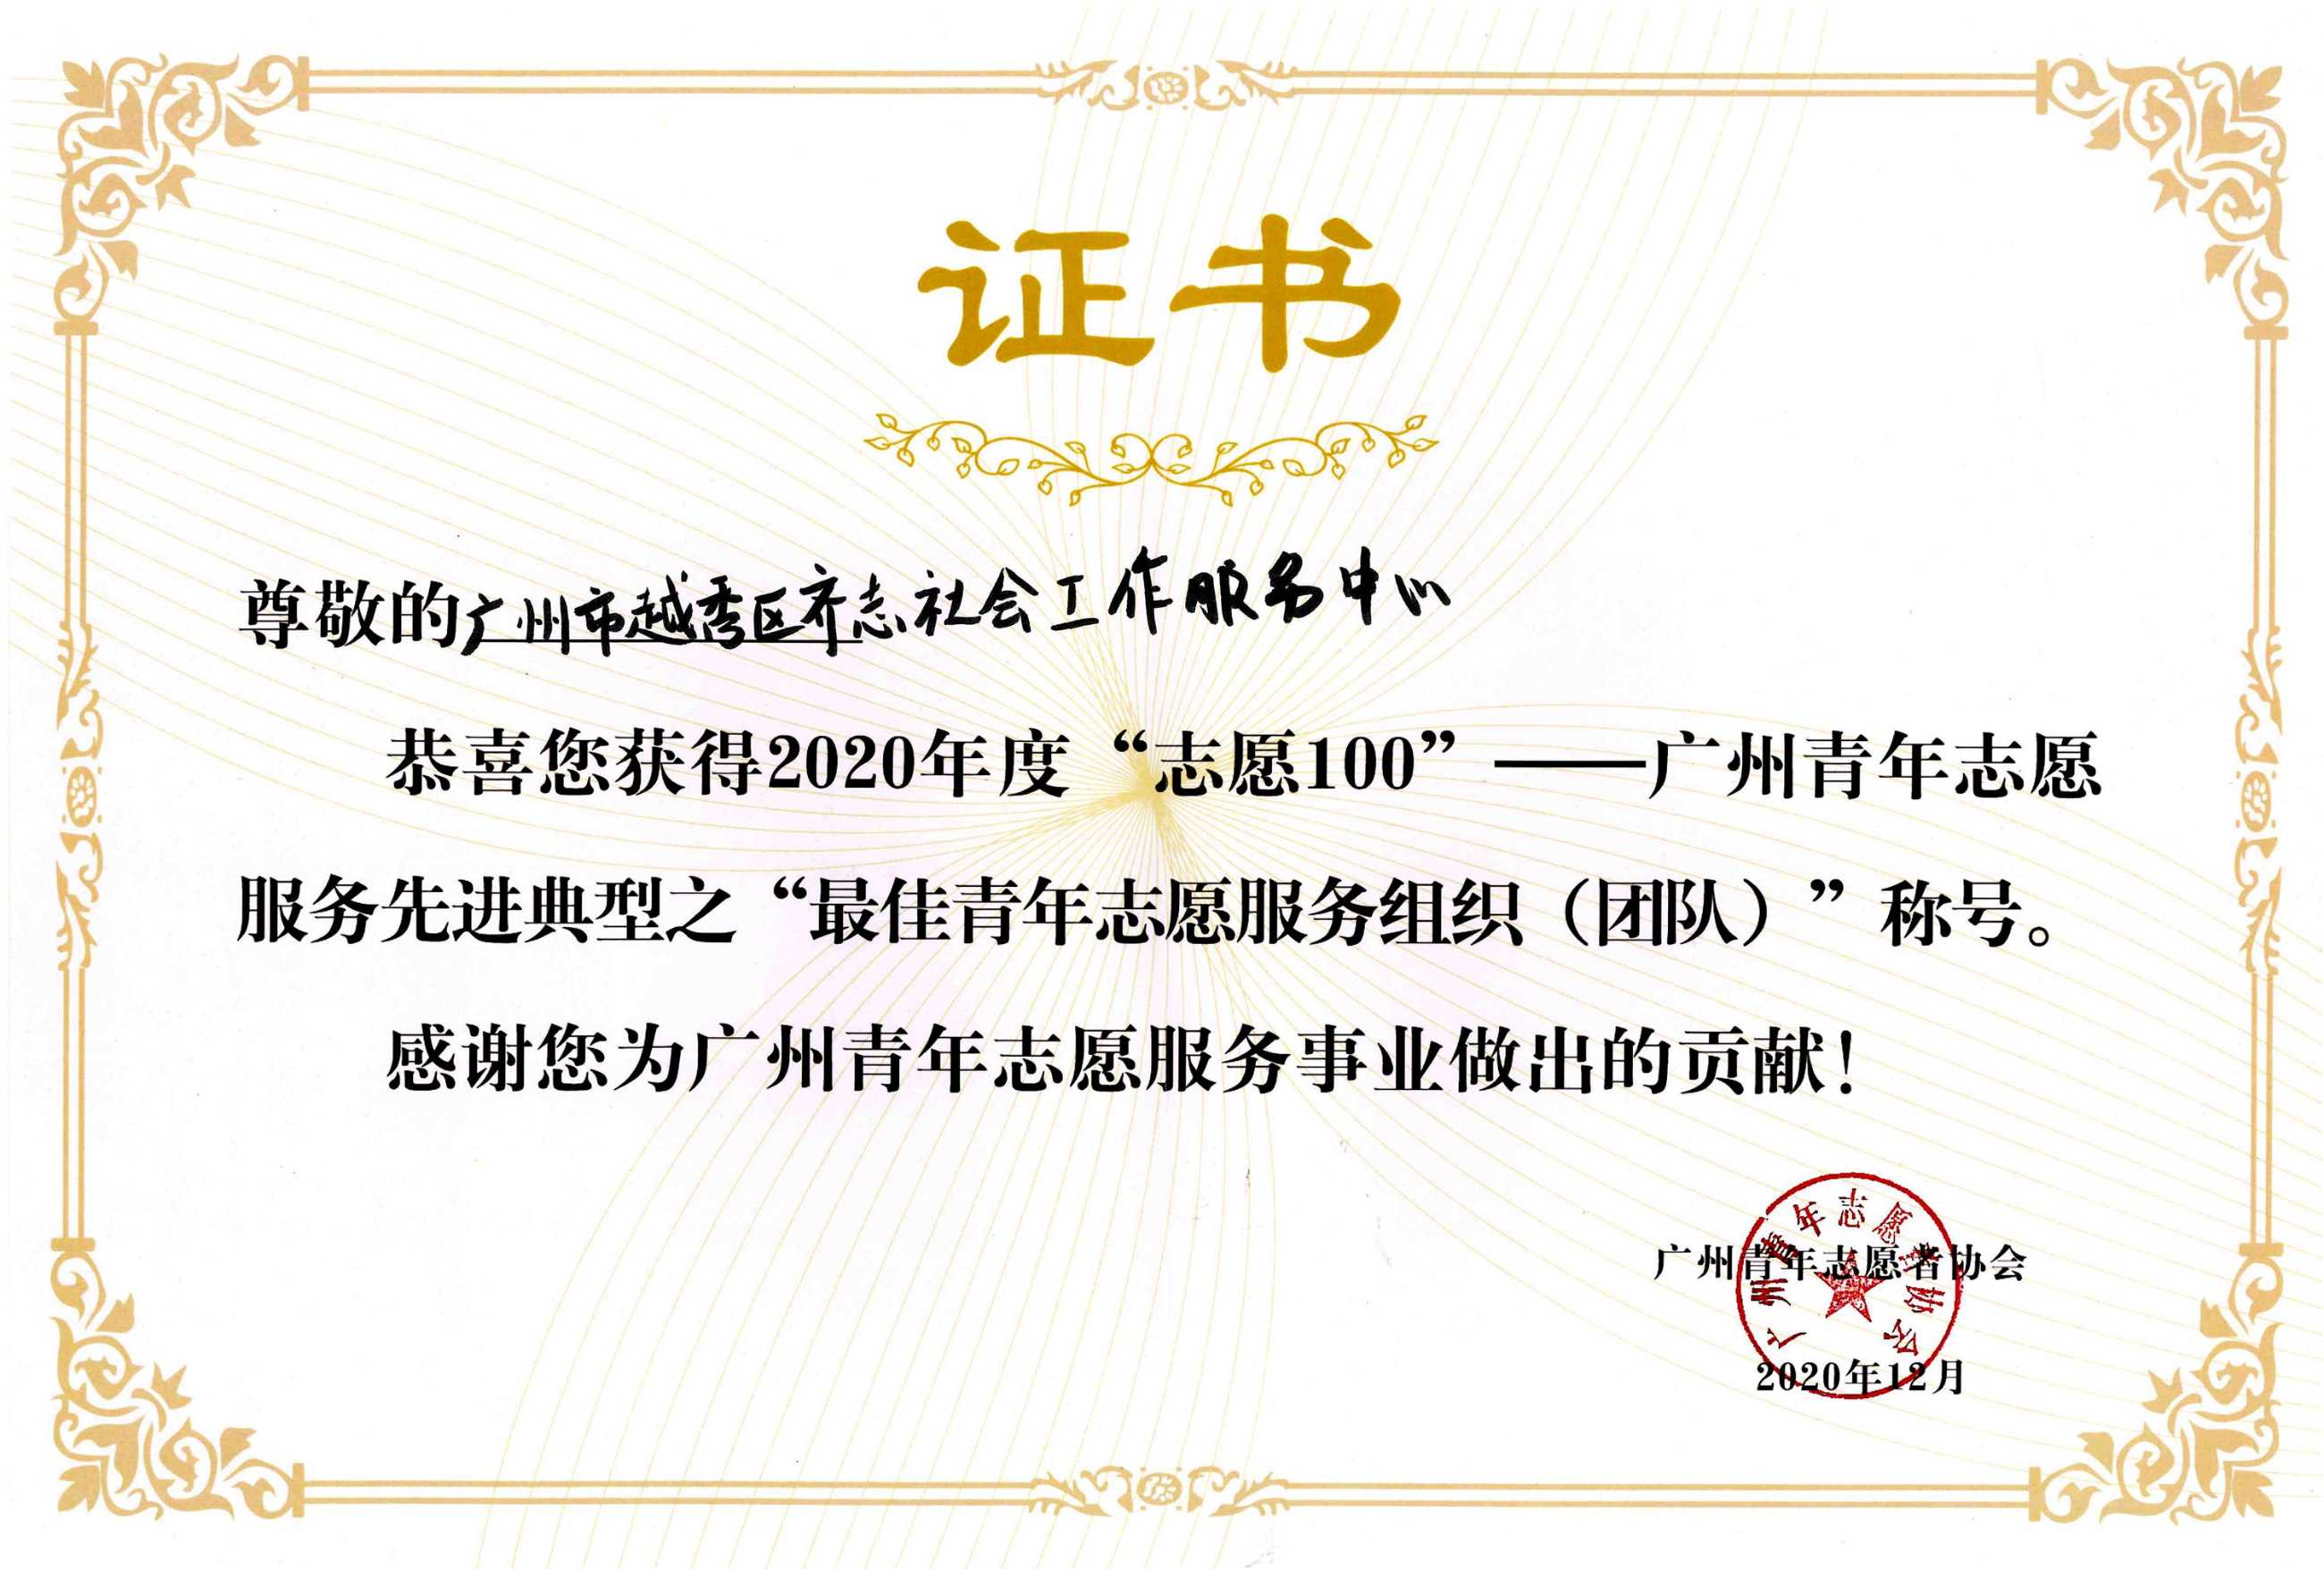 志愿100，广州青年志愿服务先进典型之“最佳青年志愿你服务组织（团队）.jpg